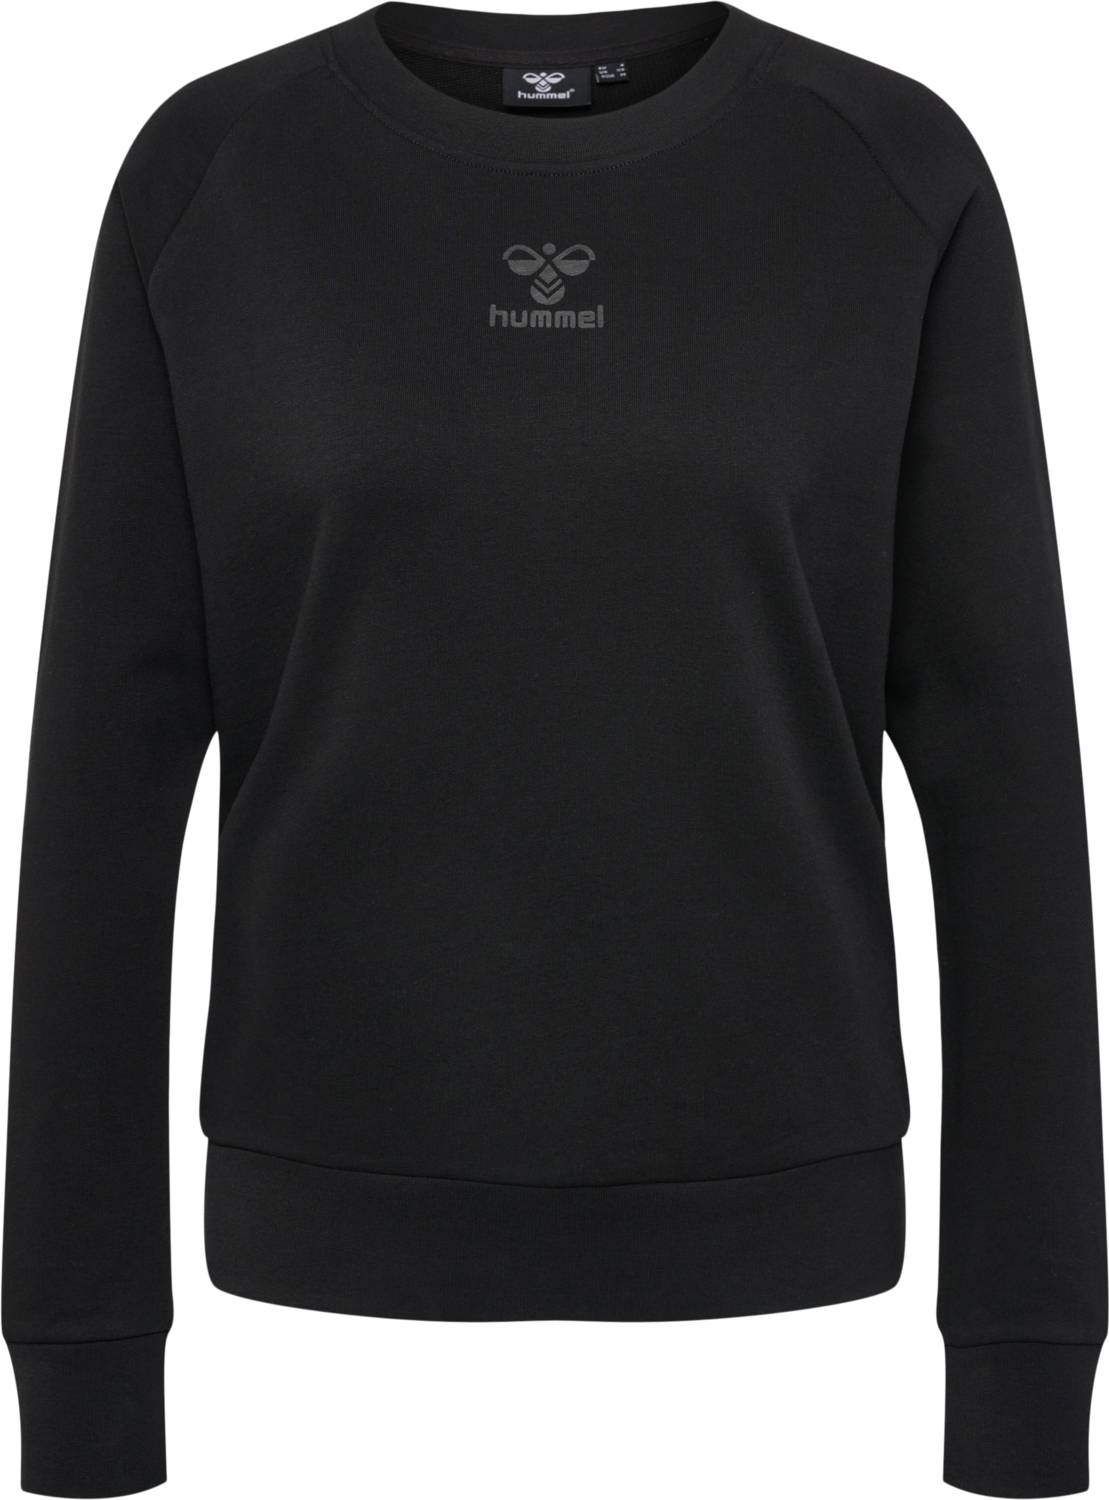 Women's hmlICONS Sweatshirt Black | Buy Women's hmlICONS Sweatshirt Black  here | Outnorth